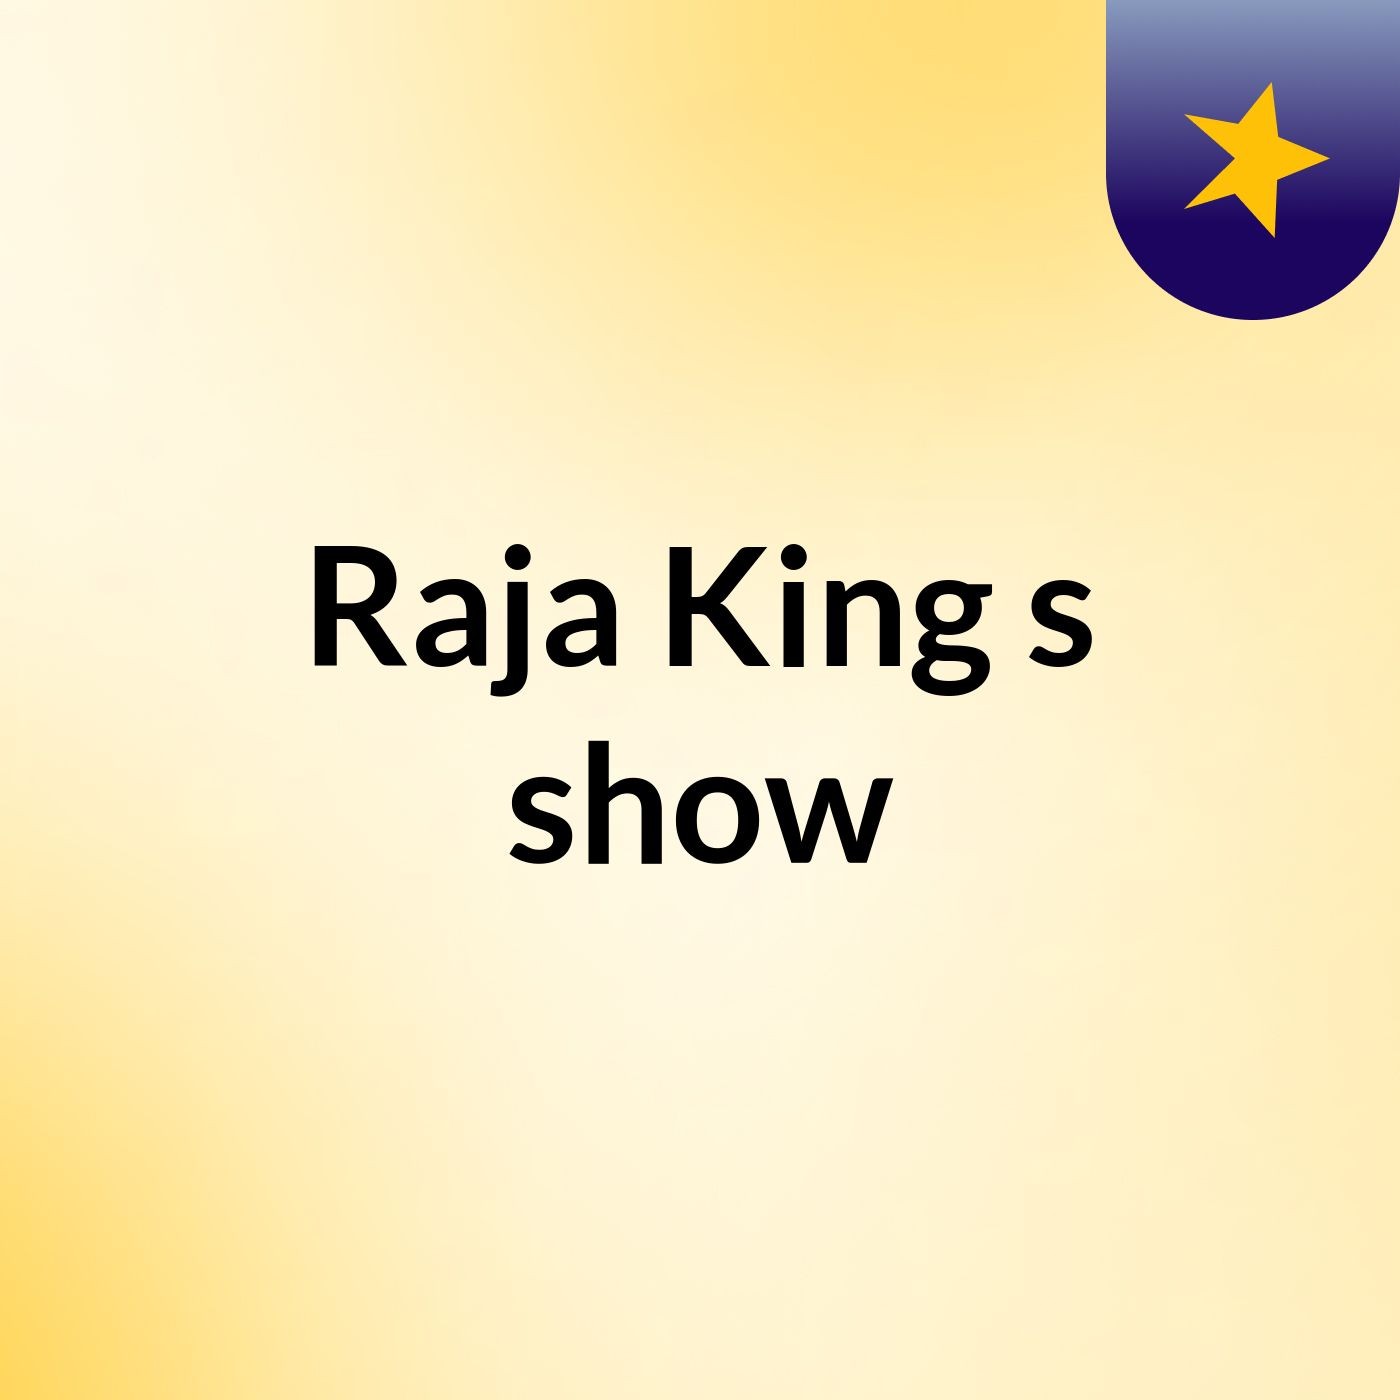 Raja King's show